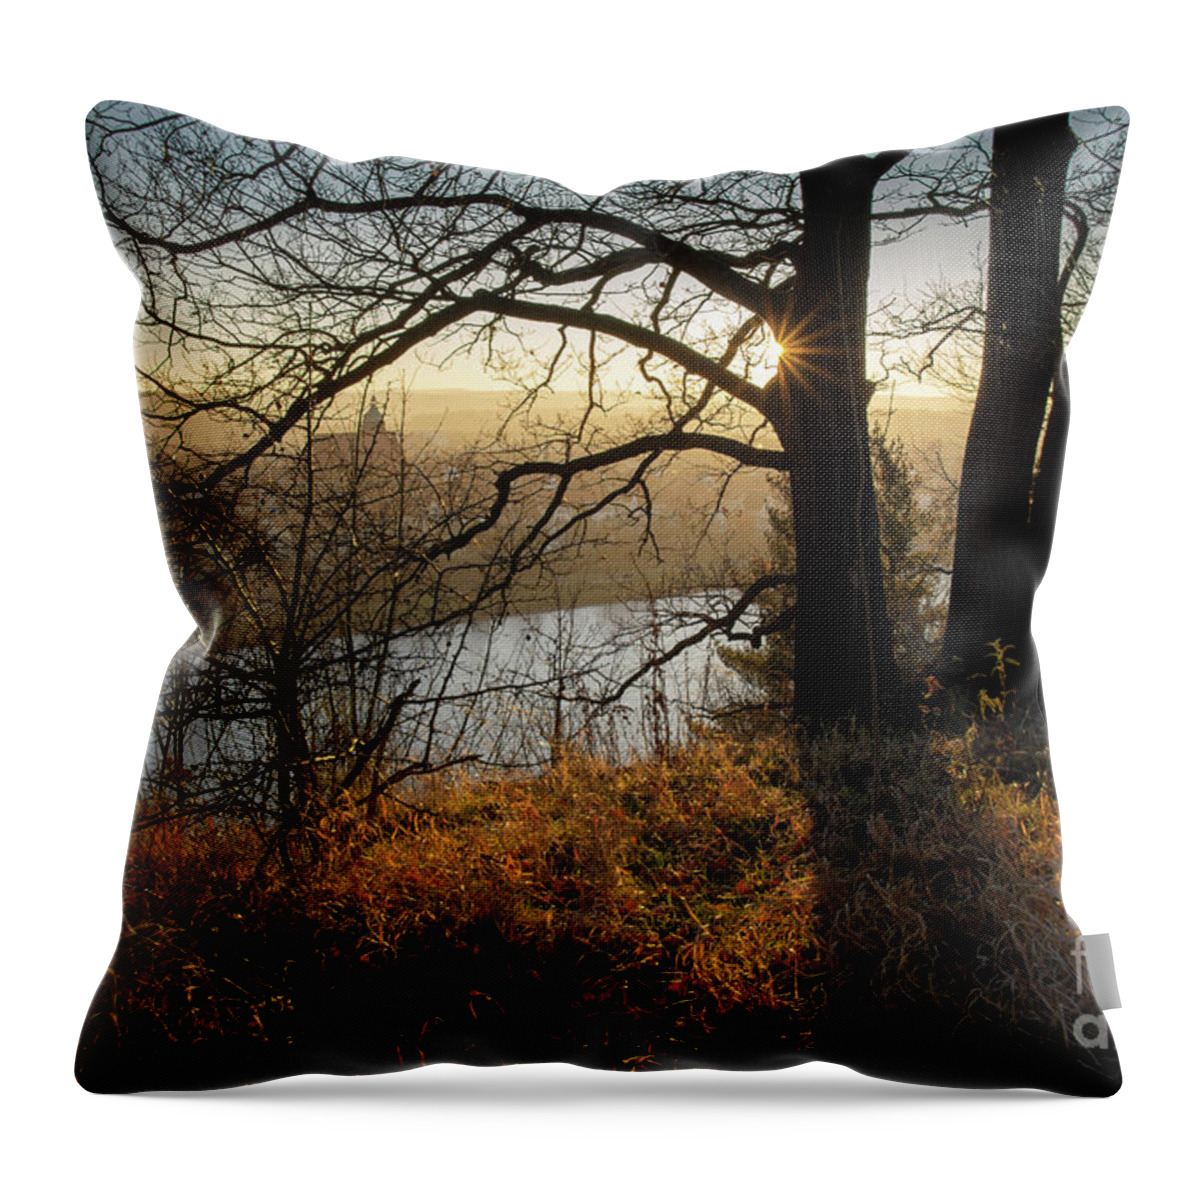 Sunset Throw Pillow featuring the photograph Golden evening light 1 by Adriana Mueller